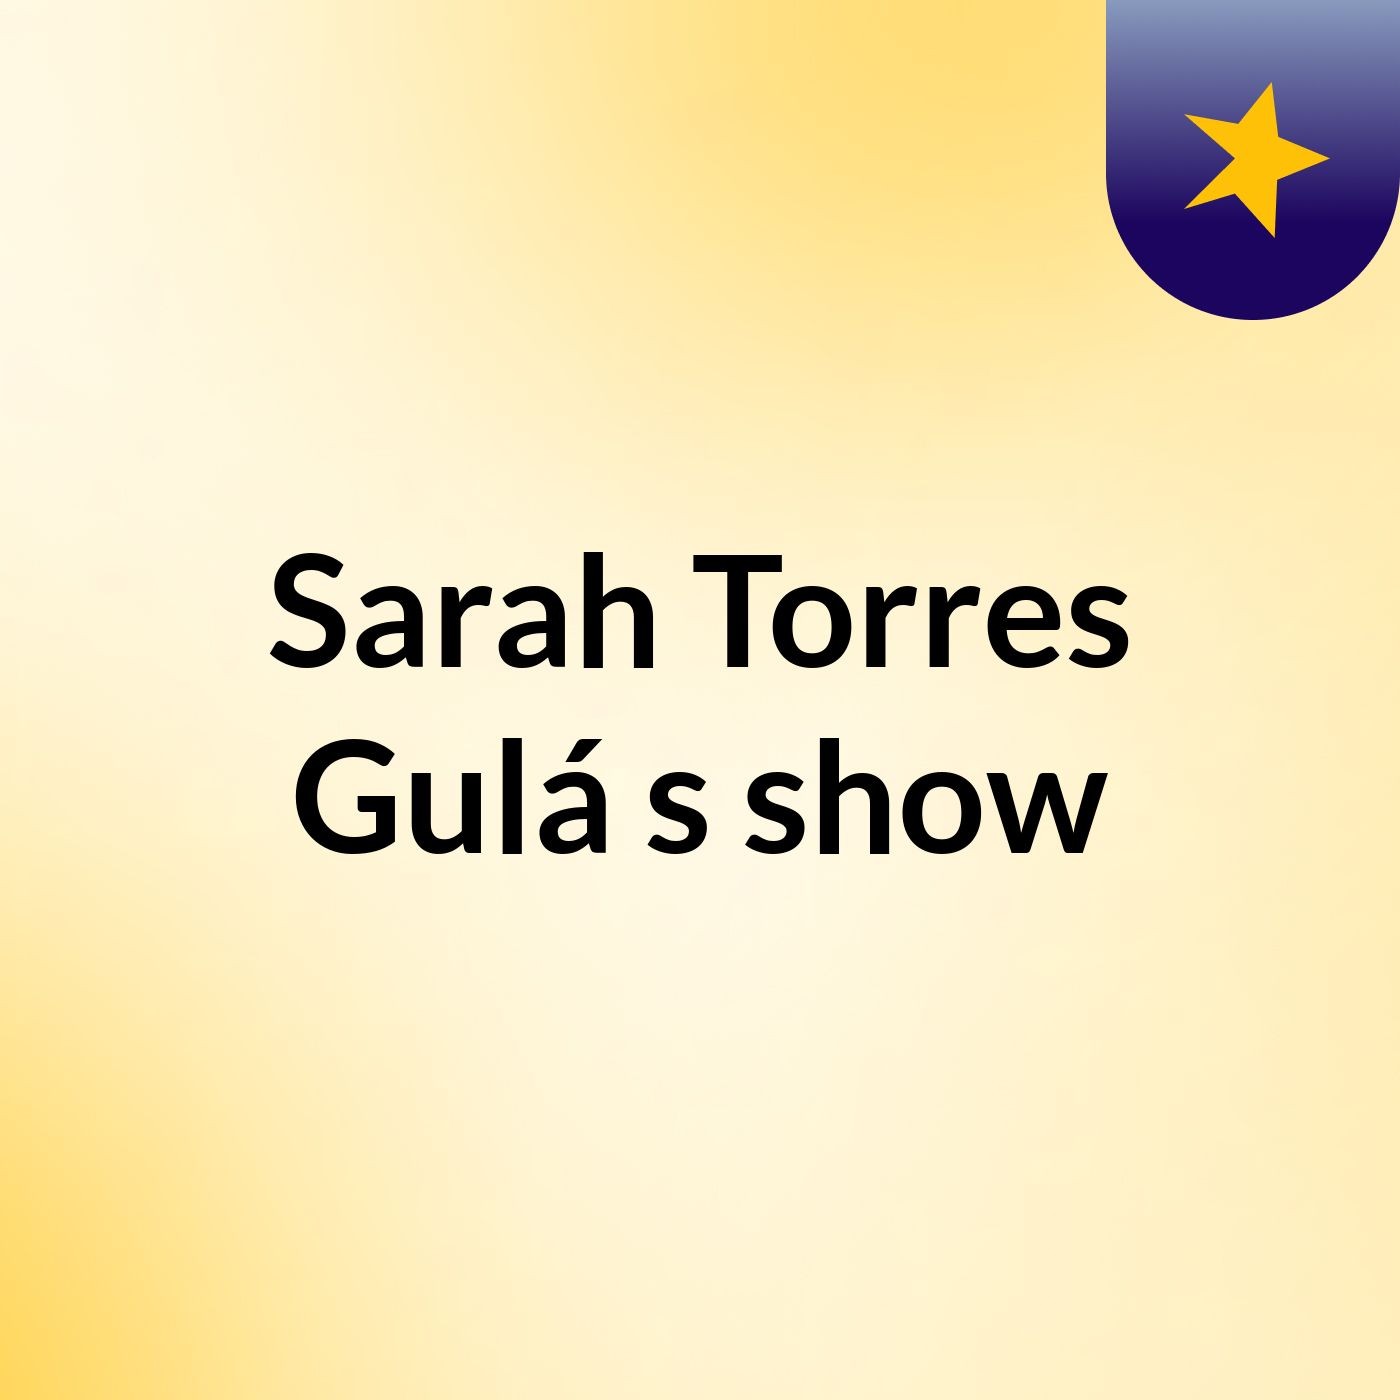 Sarah Torres Gulá's show